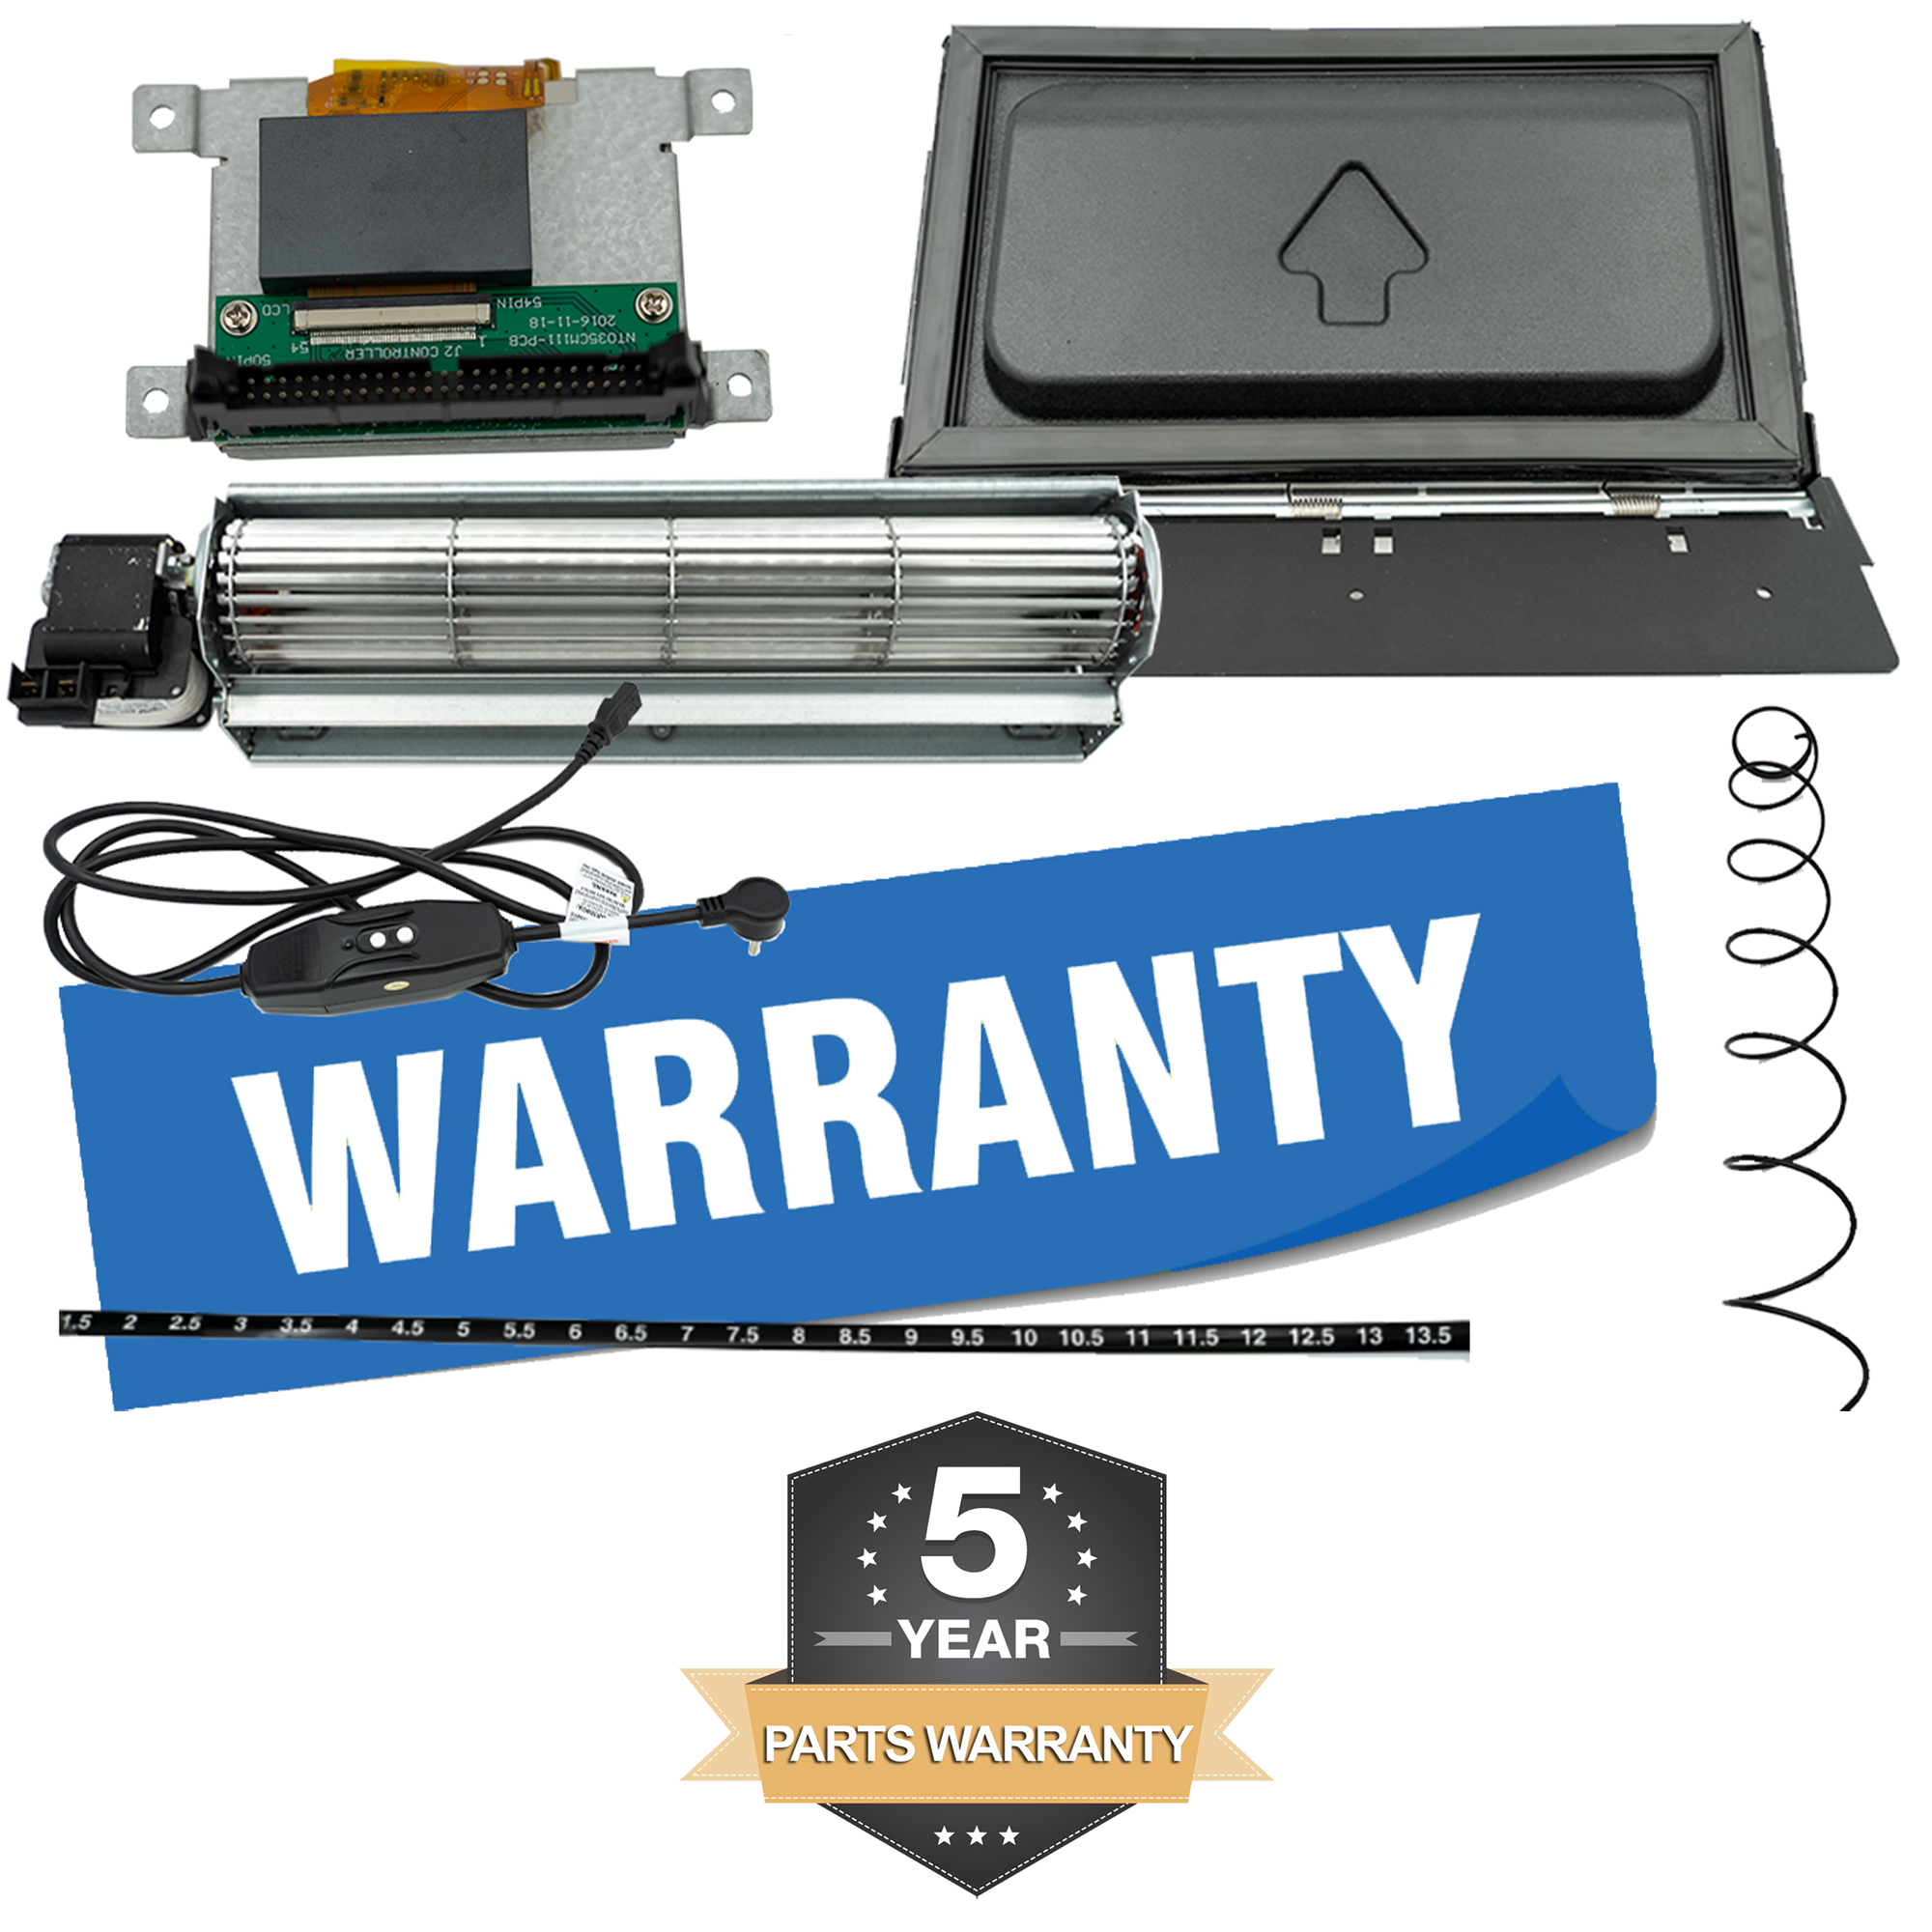 5 Year Parts Warranty